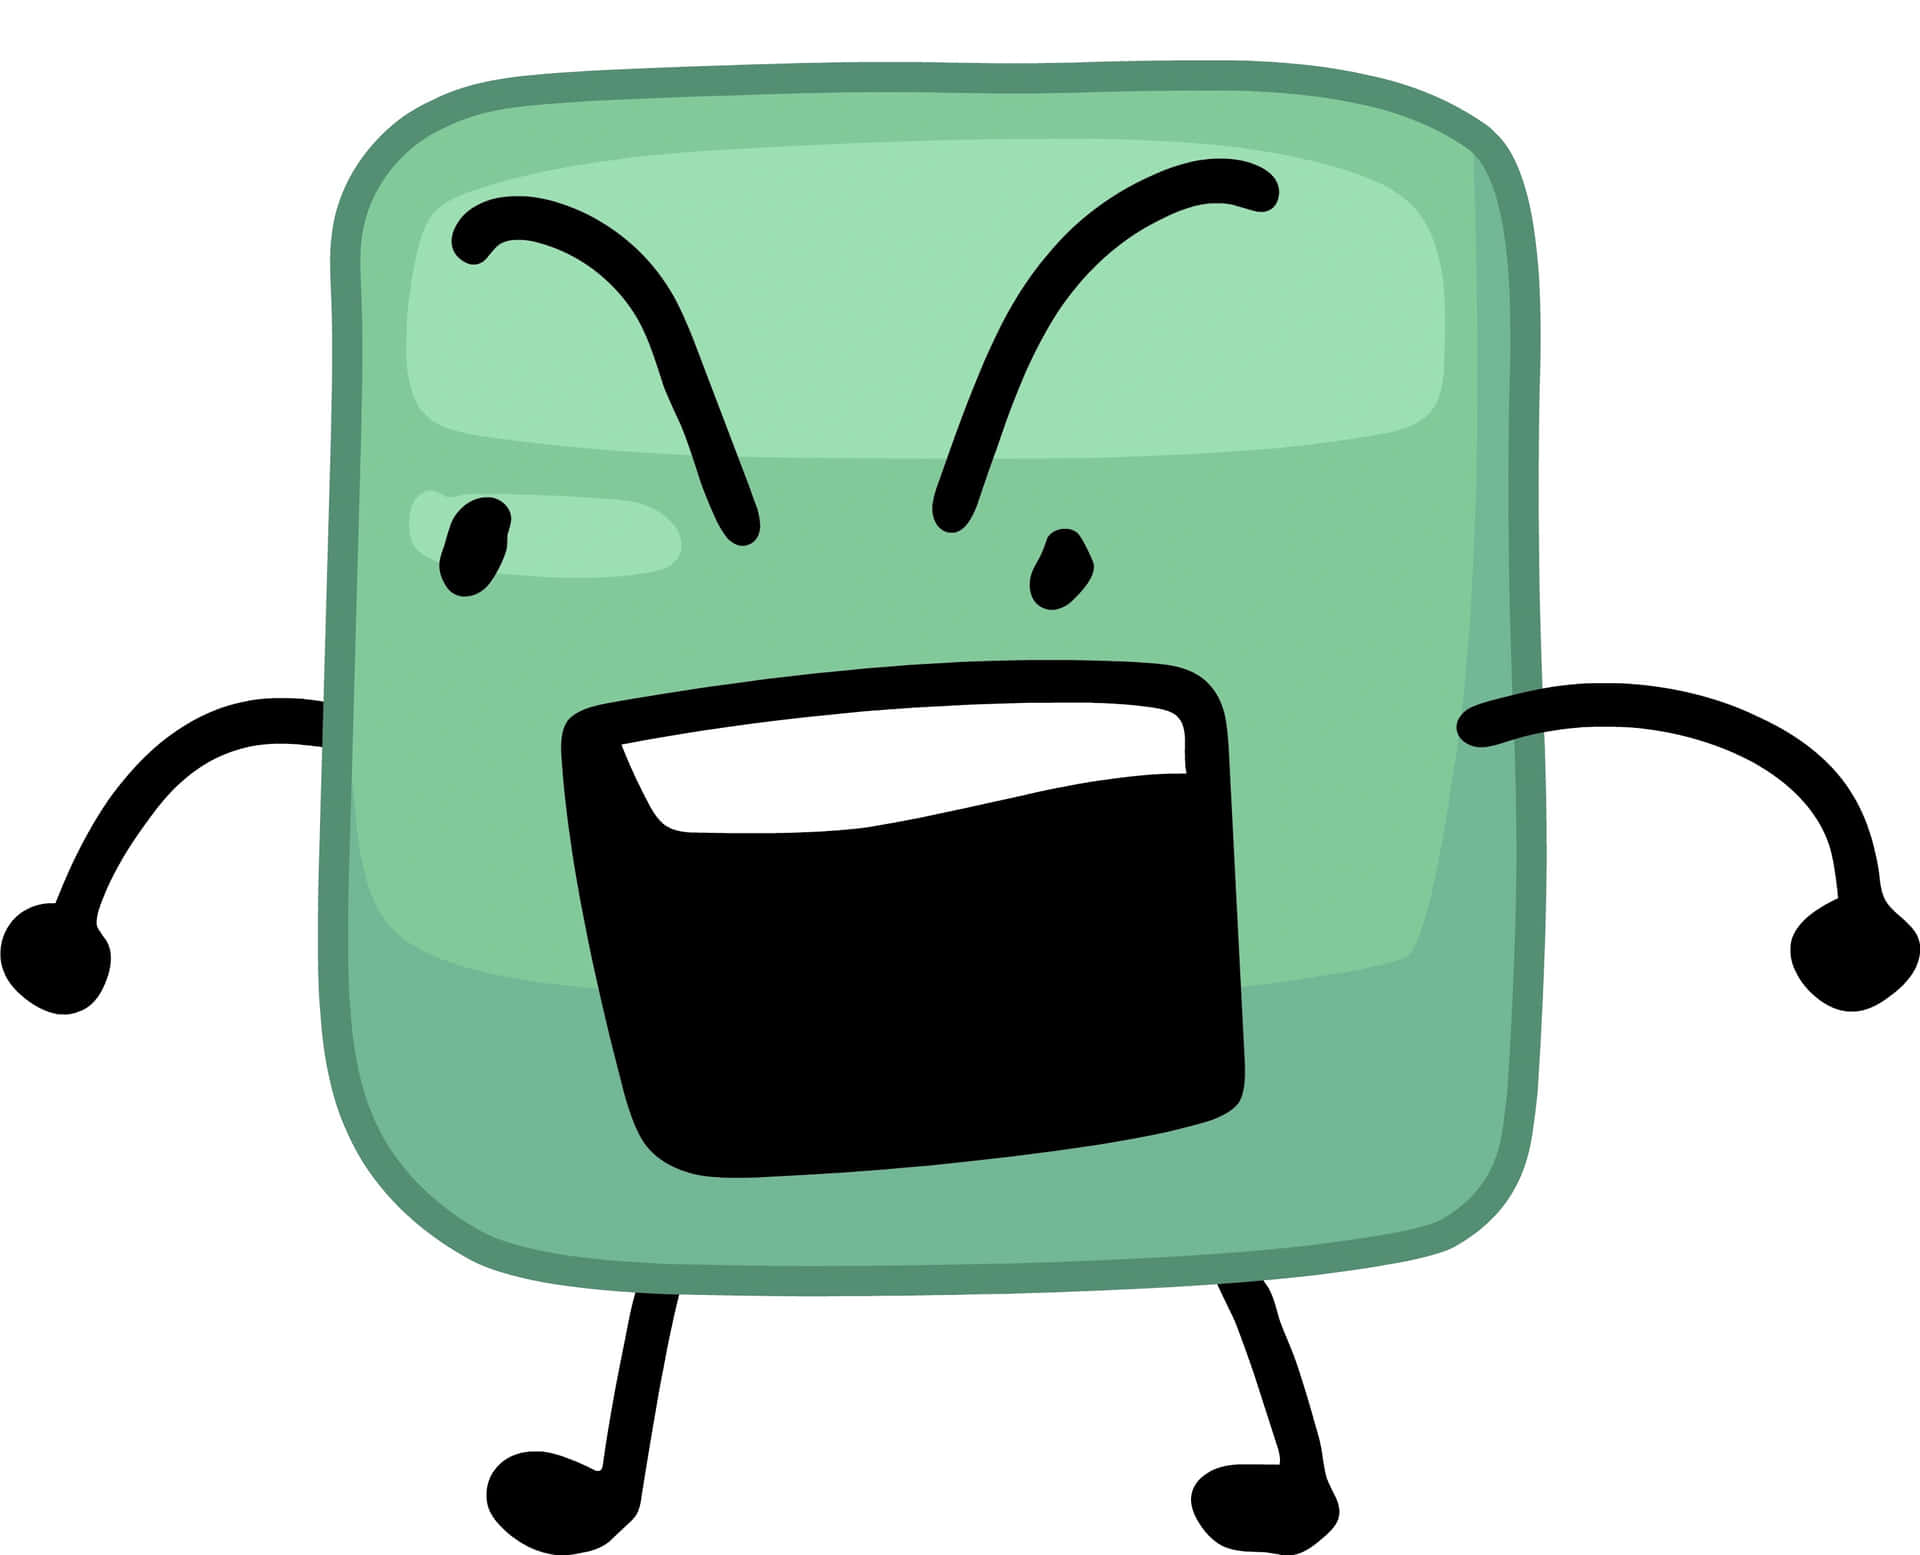 En grøn firkant med et vredt ansigt